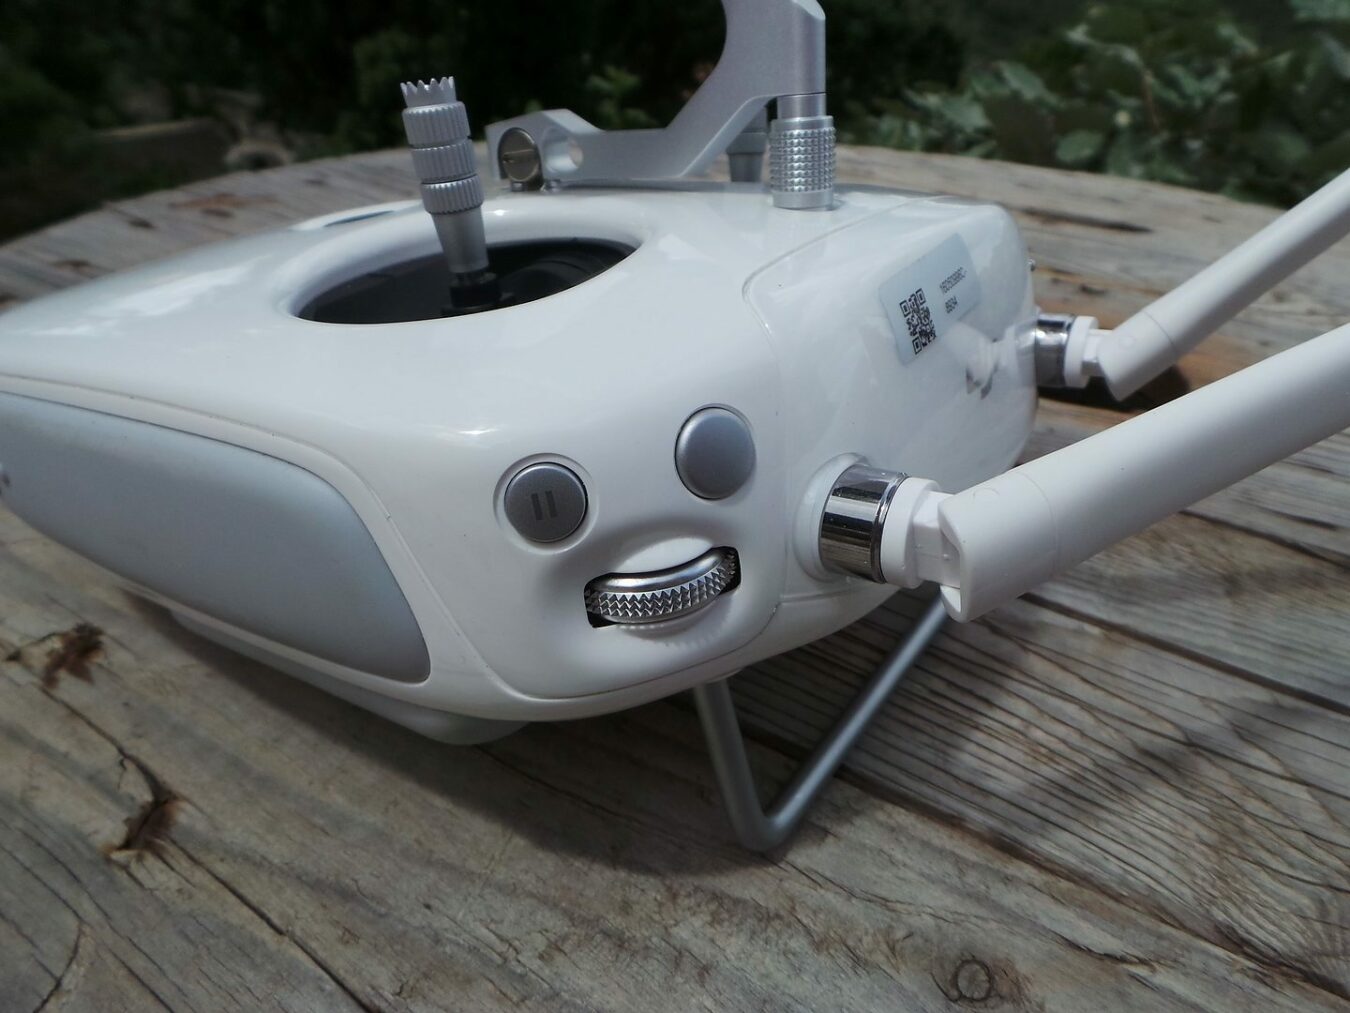 drone 20160602 123130 scaled [TEST] Dji Phantom 4 – Un drone à la portée de tous dji